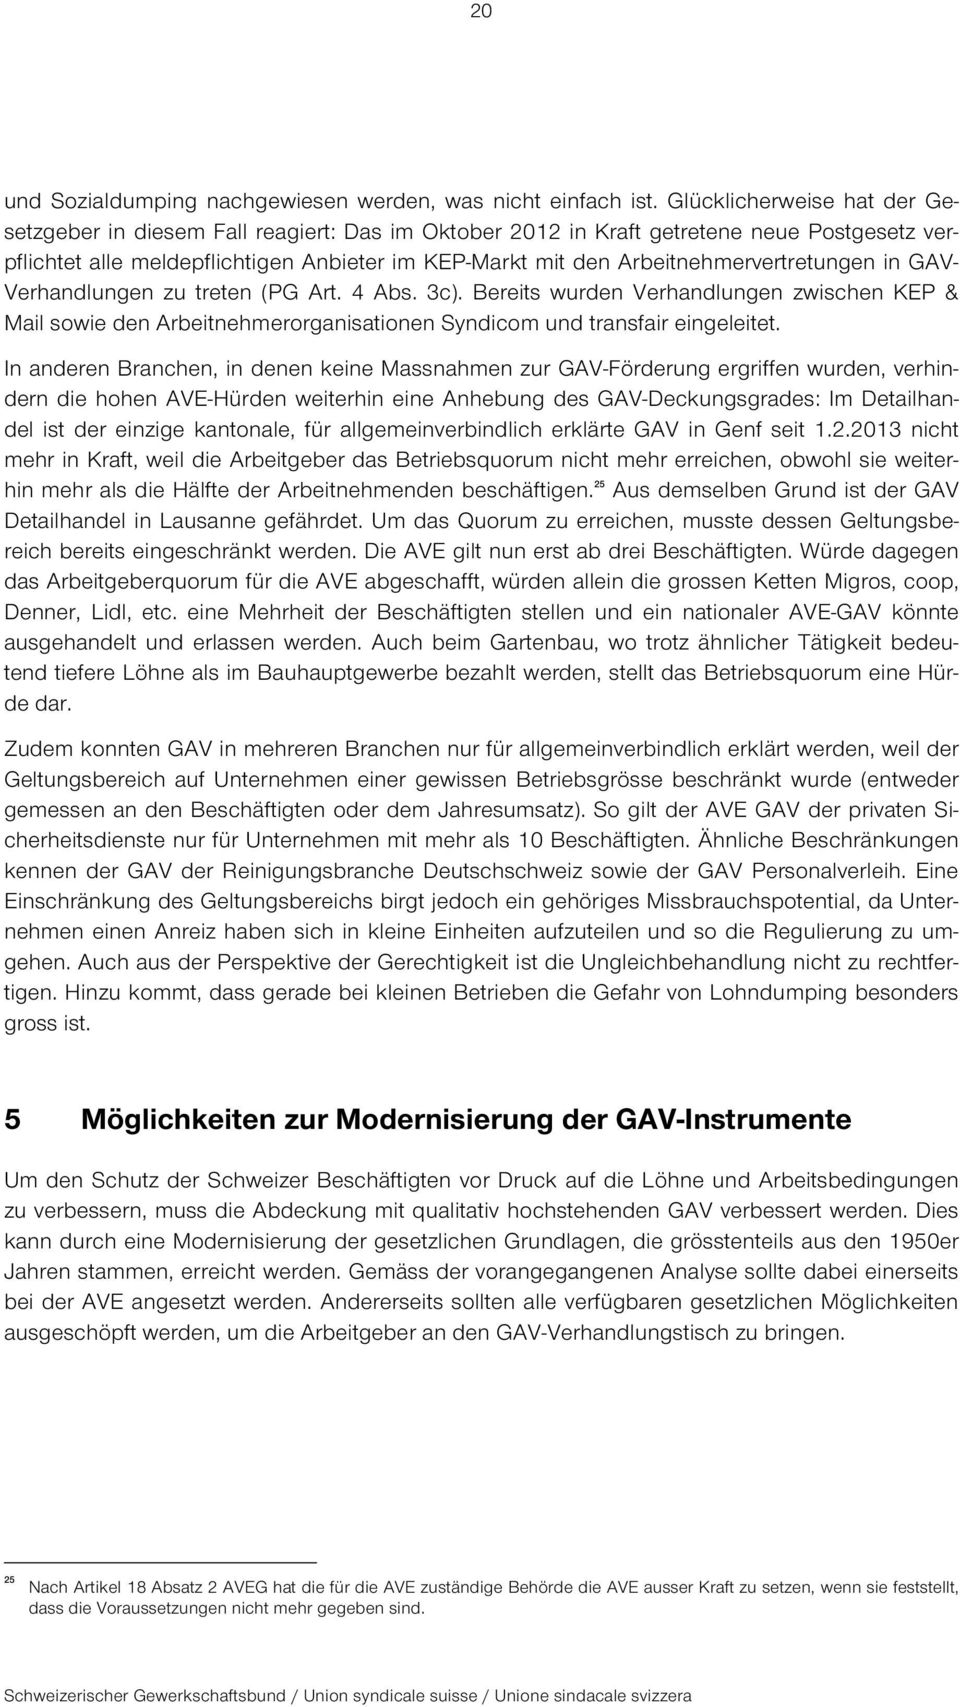 Arbeitnehmervertretungen in GAV- Verhandlungen zu treten (PG Art. 4 Abs. 3c). Bereits wurden Verhandlungen zwischen KEP & Mail sowie den Arbeitnehmerorganisationen Syndicom und transfair eingeleitet.